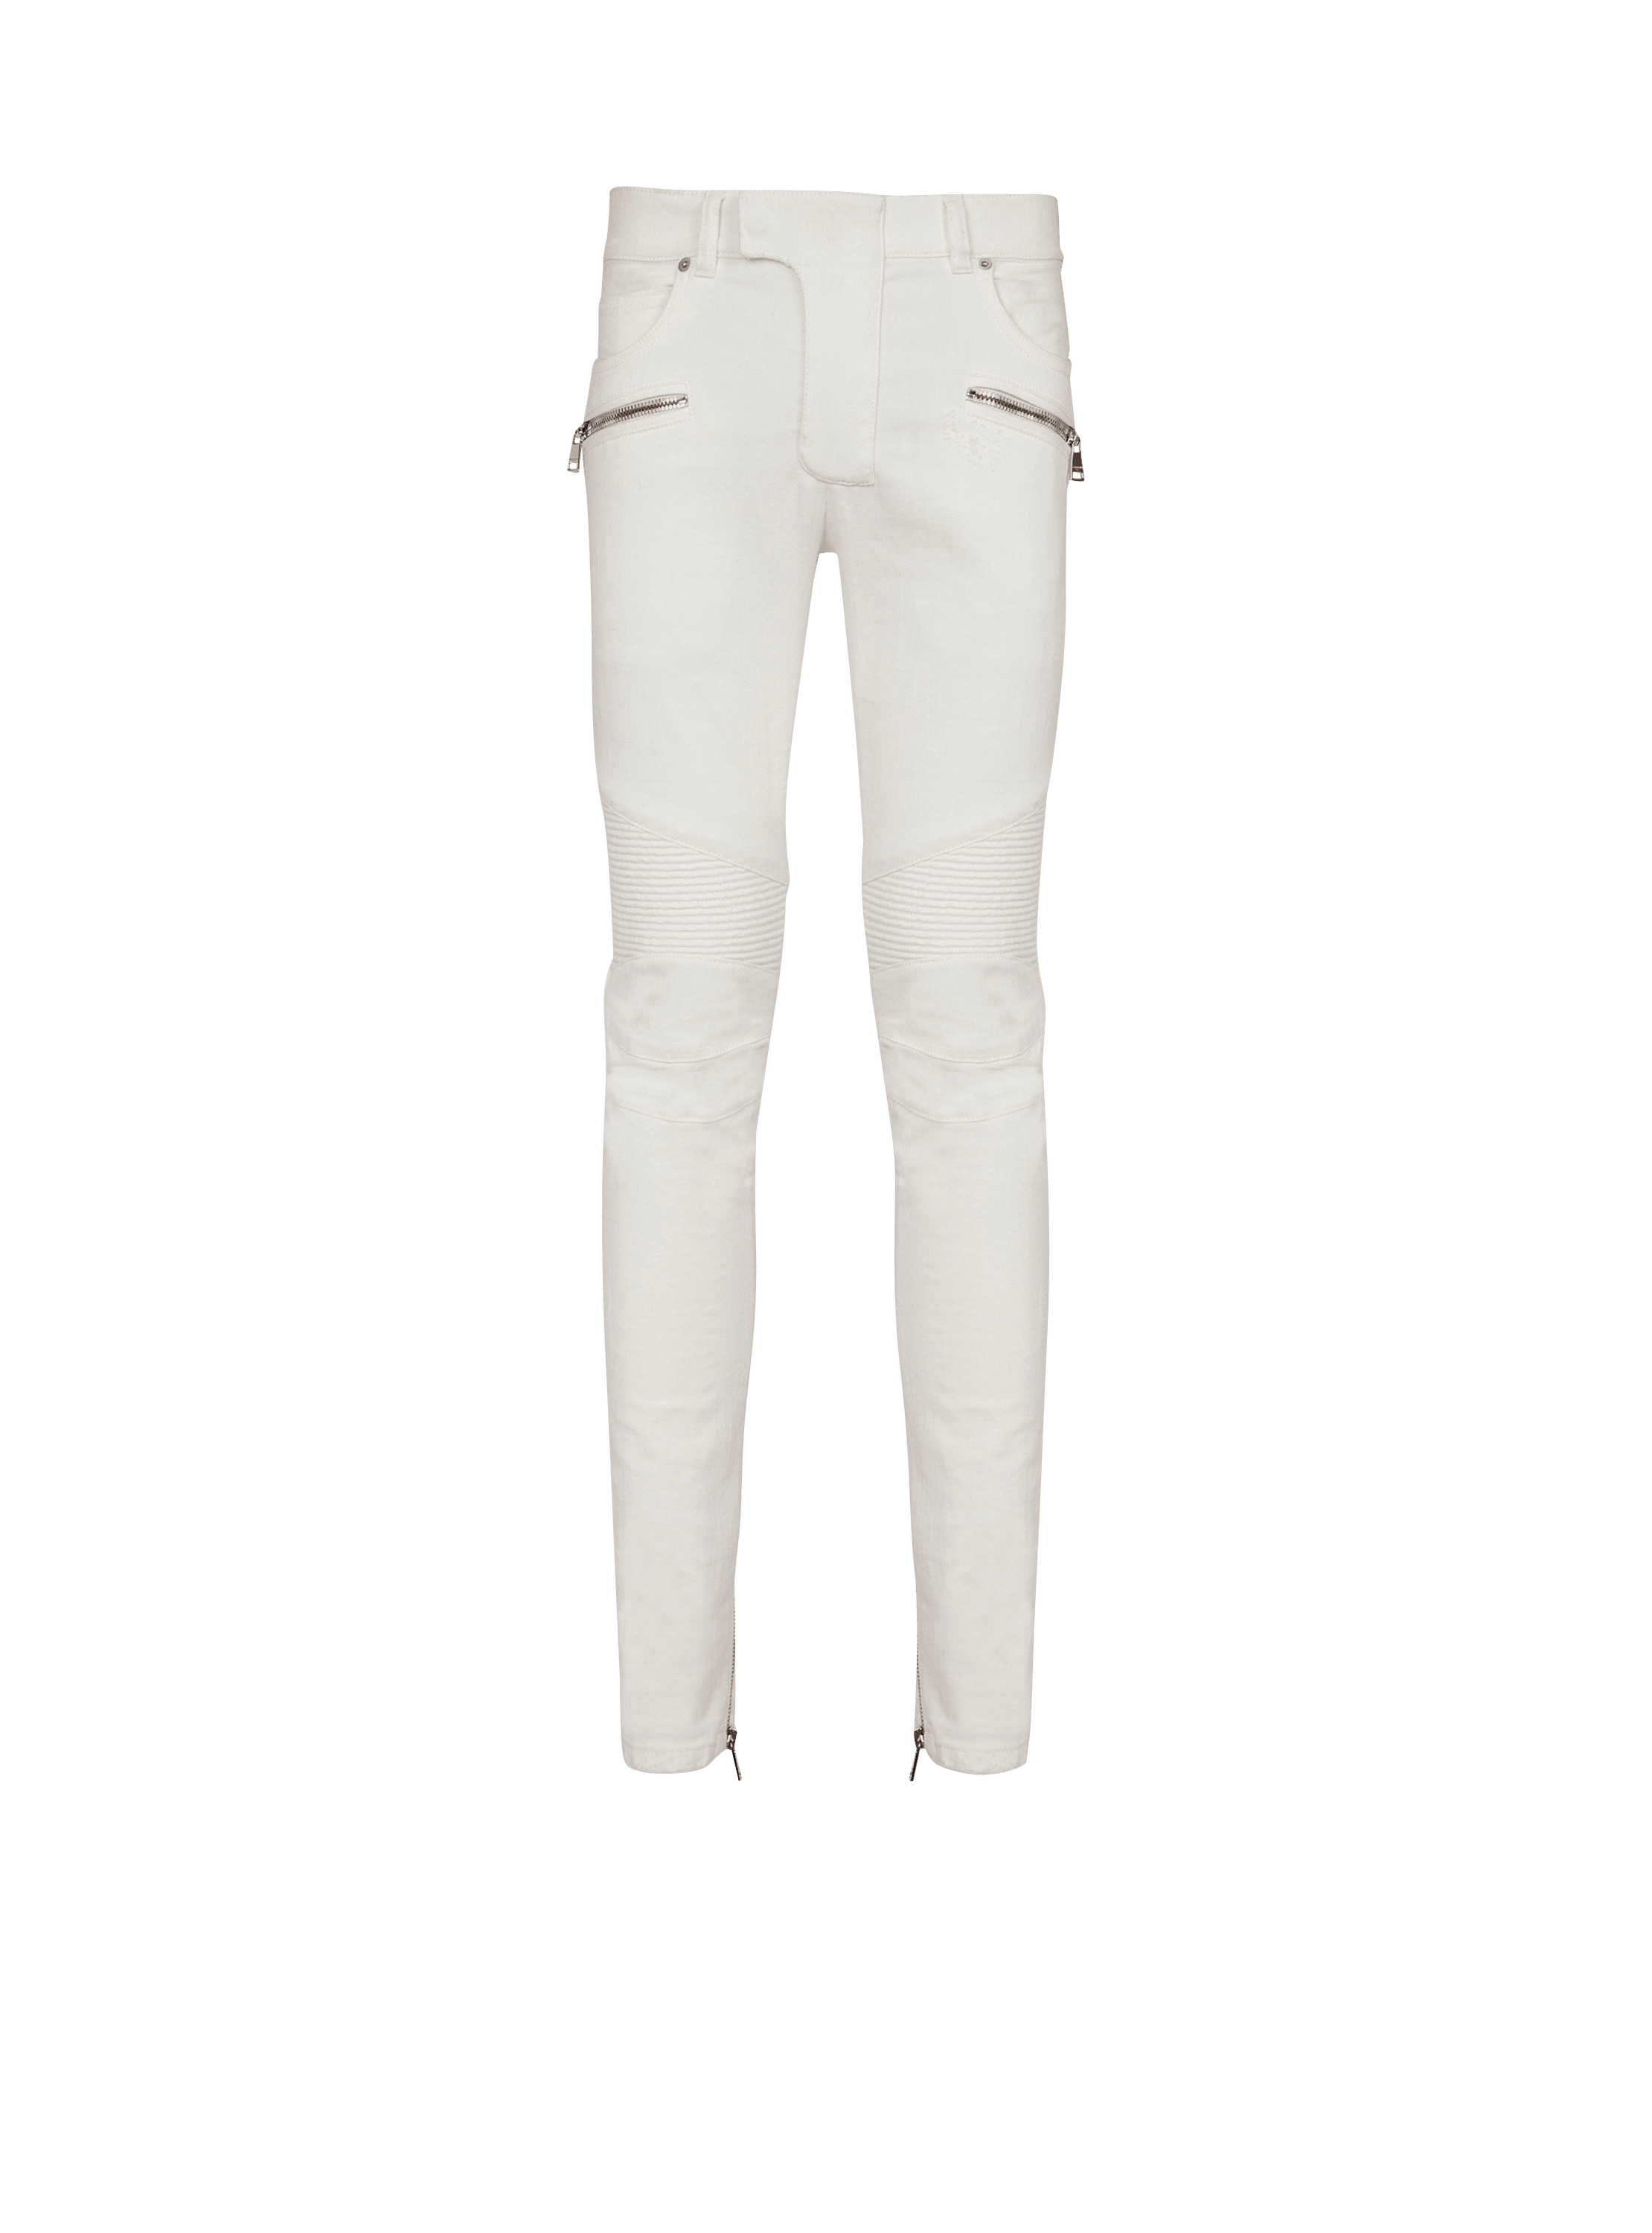 Biker jeans in white denim